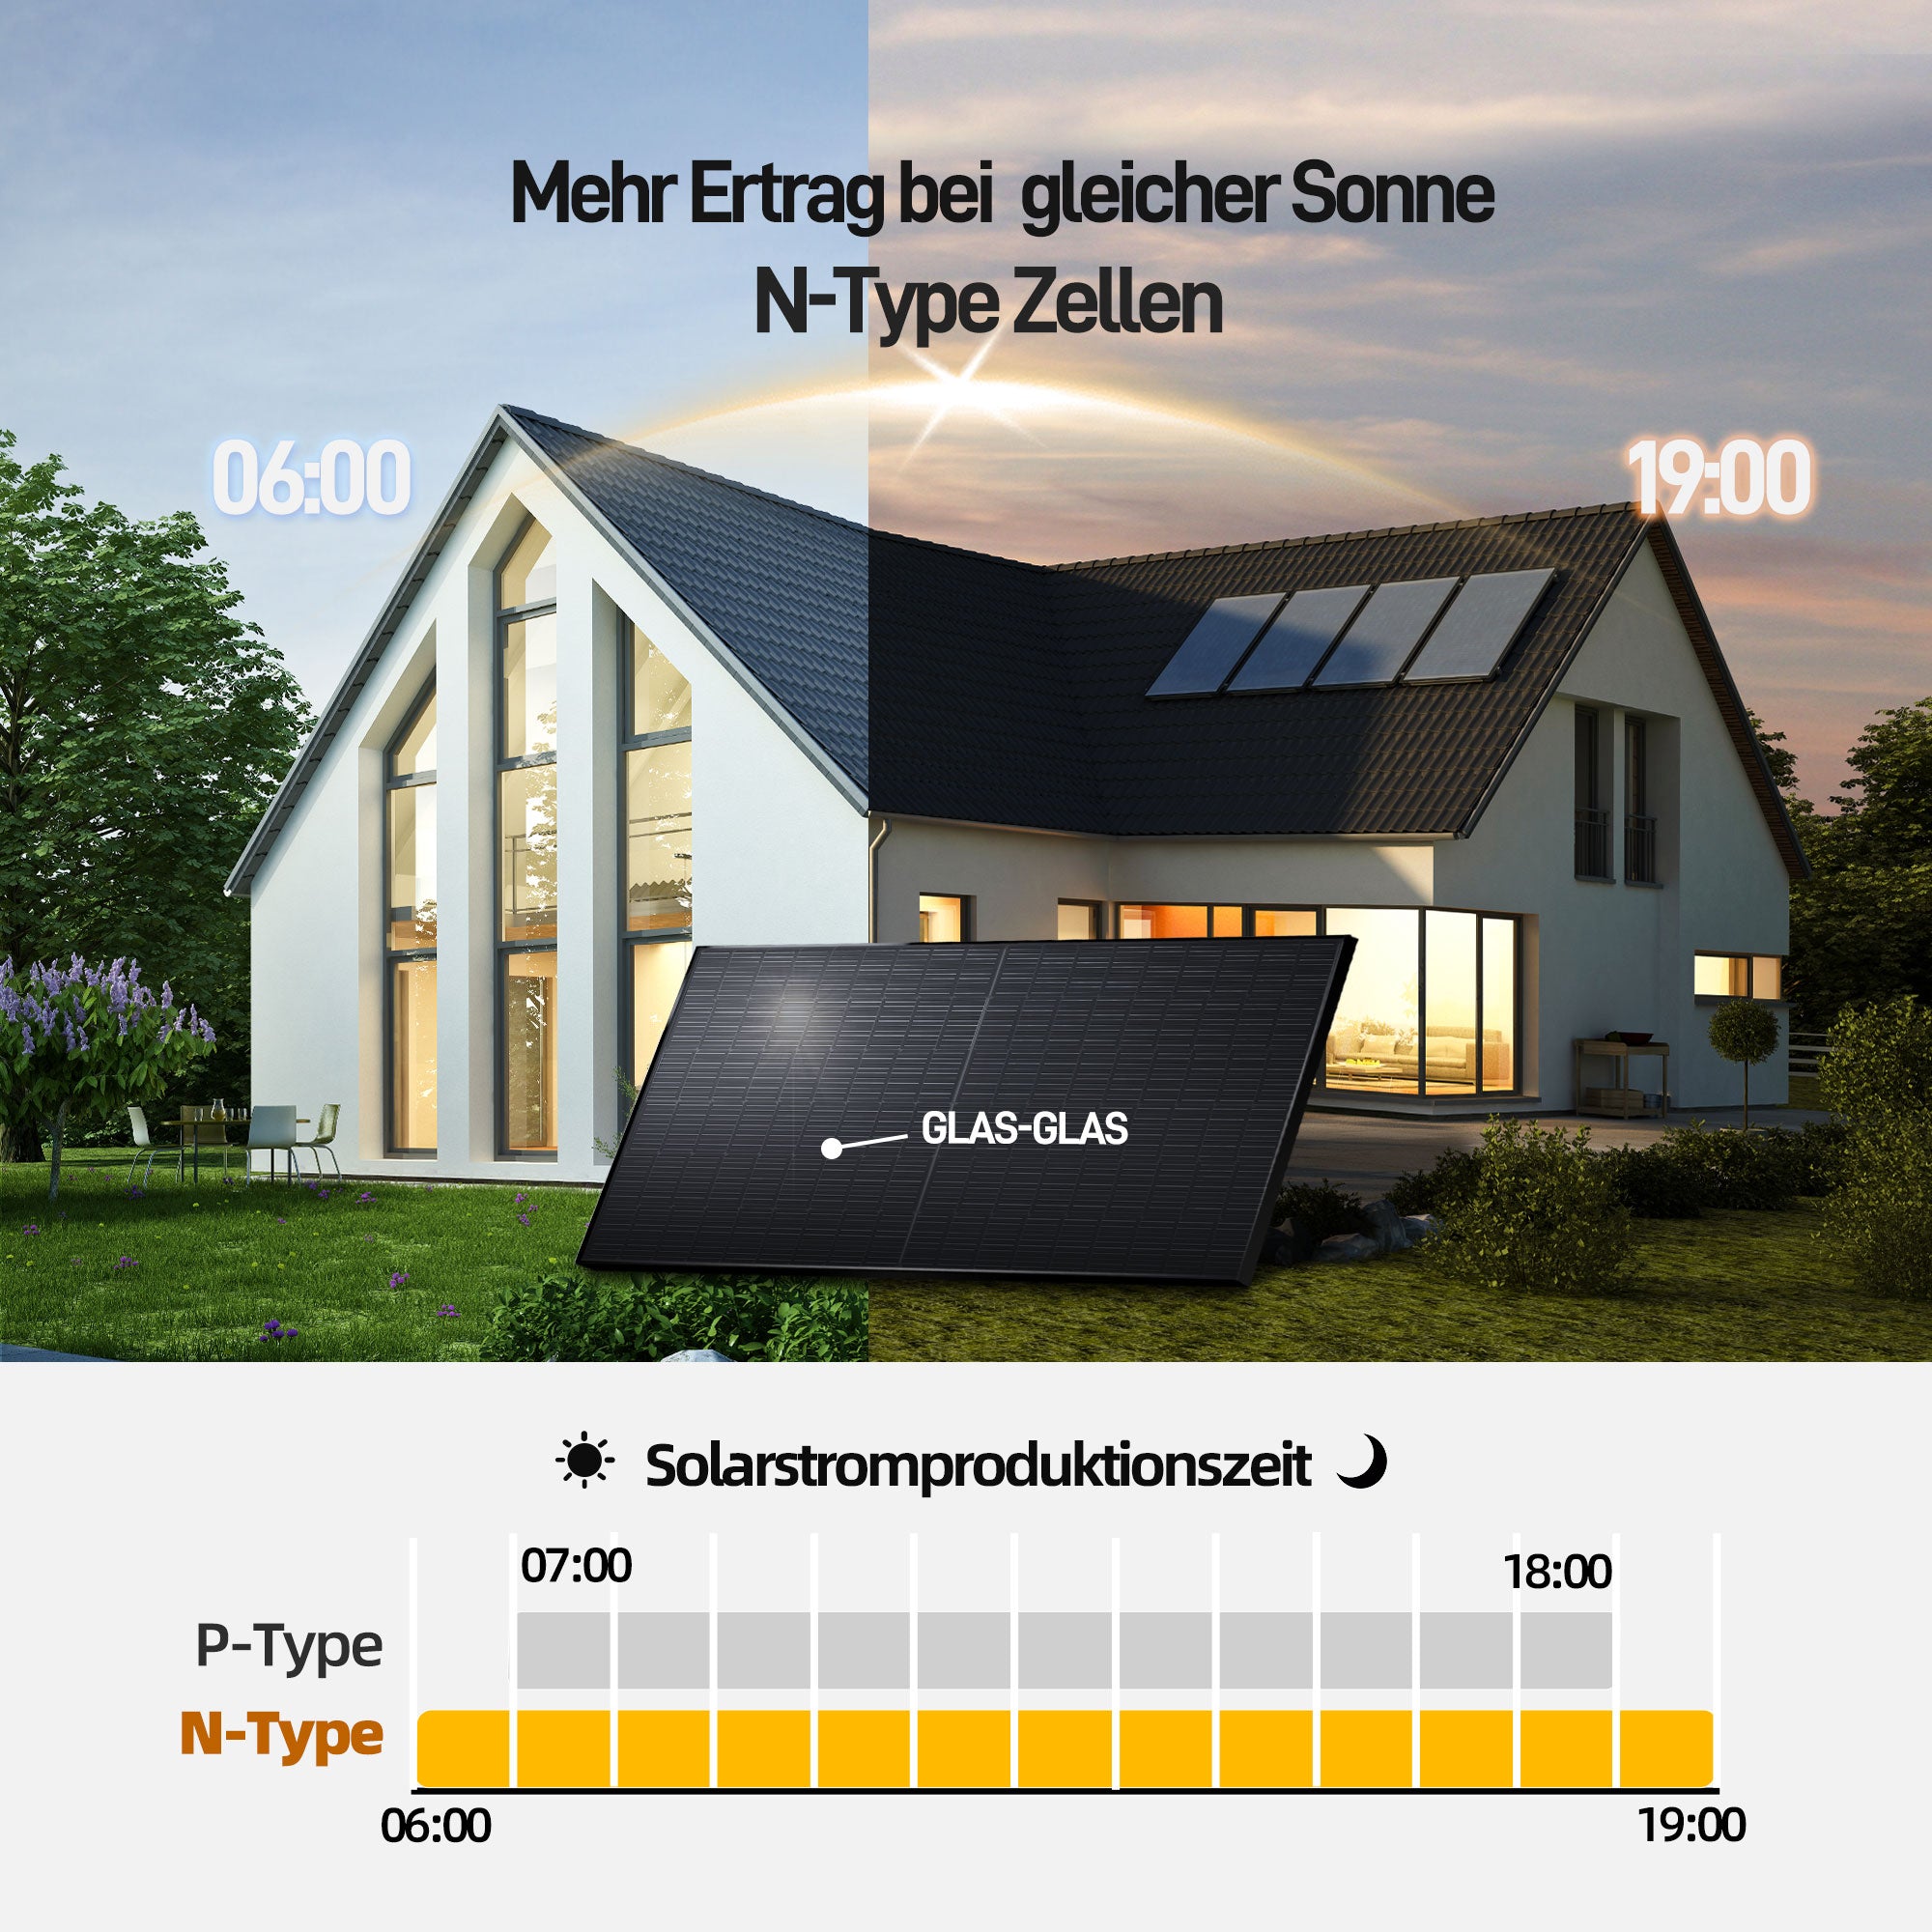 ERGOFINO Komplettset Balkonkraftwerk 960W mit Solarspeicher, enthält 2x480W bifaziale Glas-Glas-Solarmodule, Anker-Wechselrichter 800W, Anker SOLlX Solarbank E1600 und Kabel